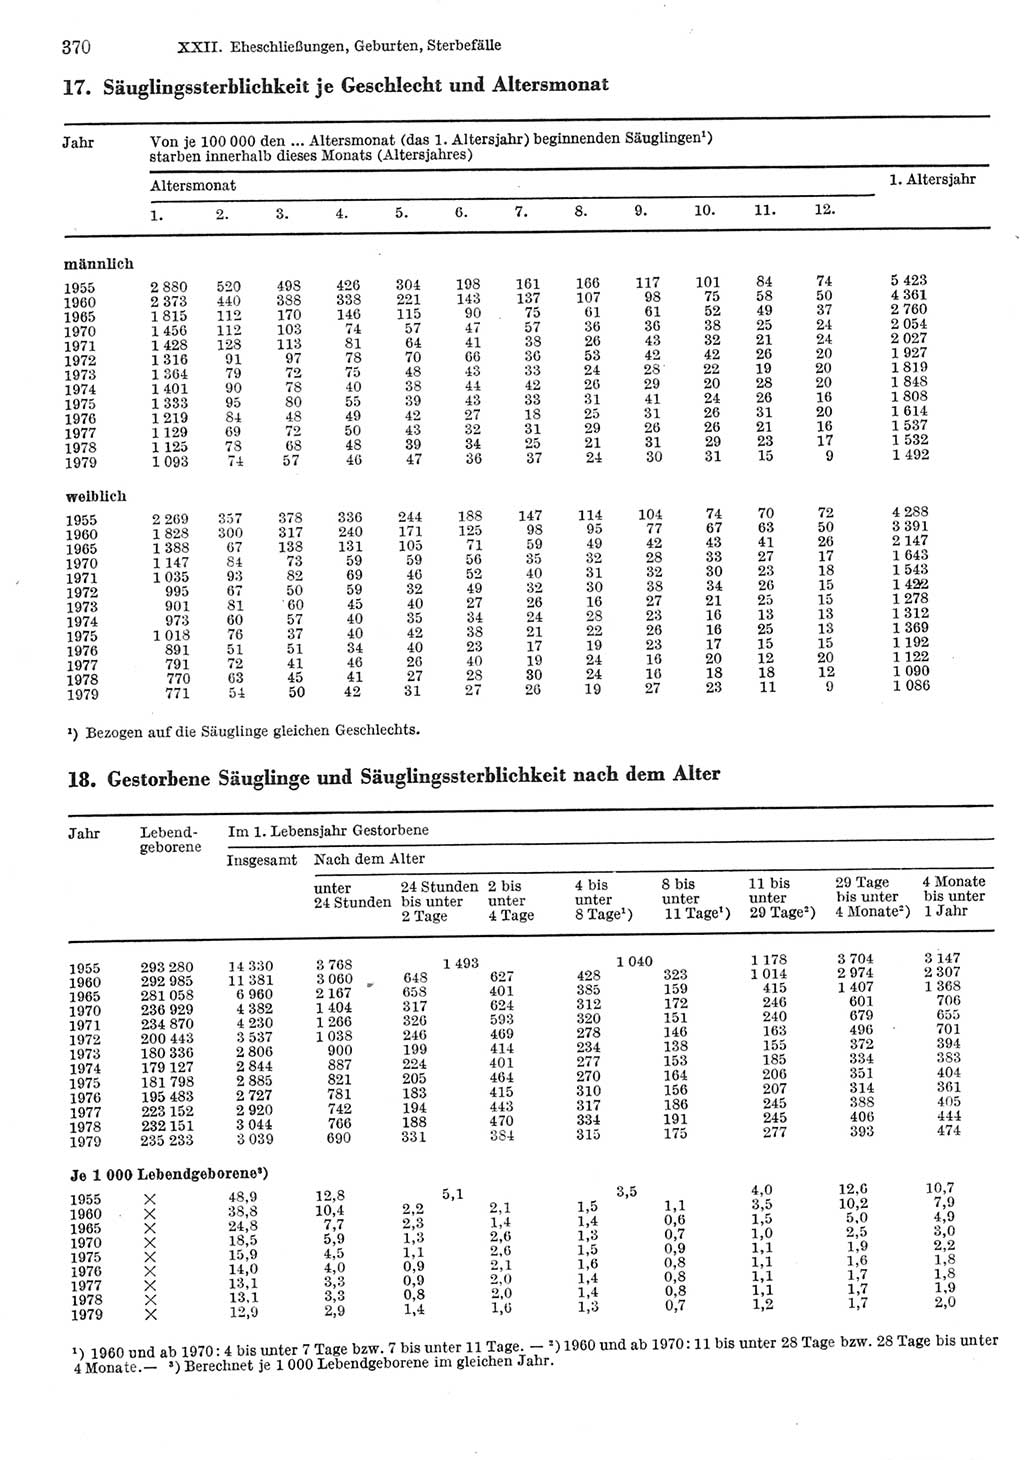 Statistisches Jahrbuch der Deutschen Demokratischen Republik (DDR) 1981, Seite 370 (Stat. Jb. DDR 1981, S. 370)